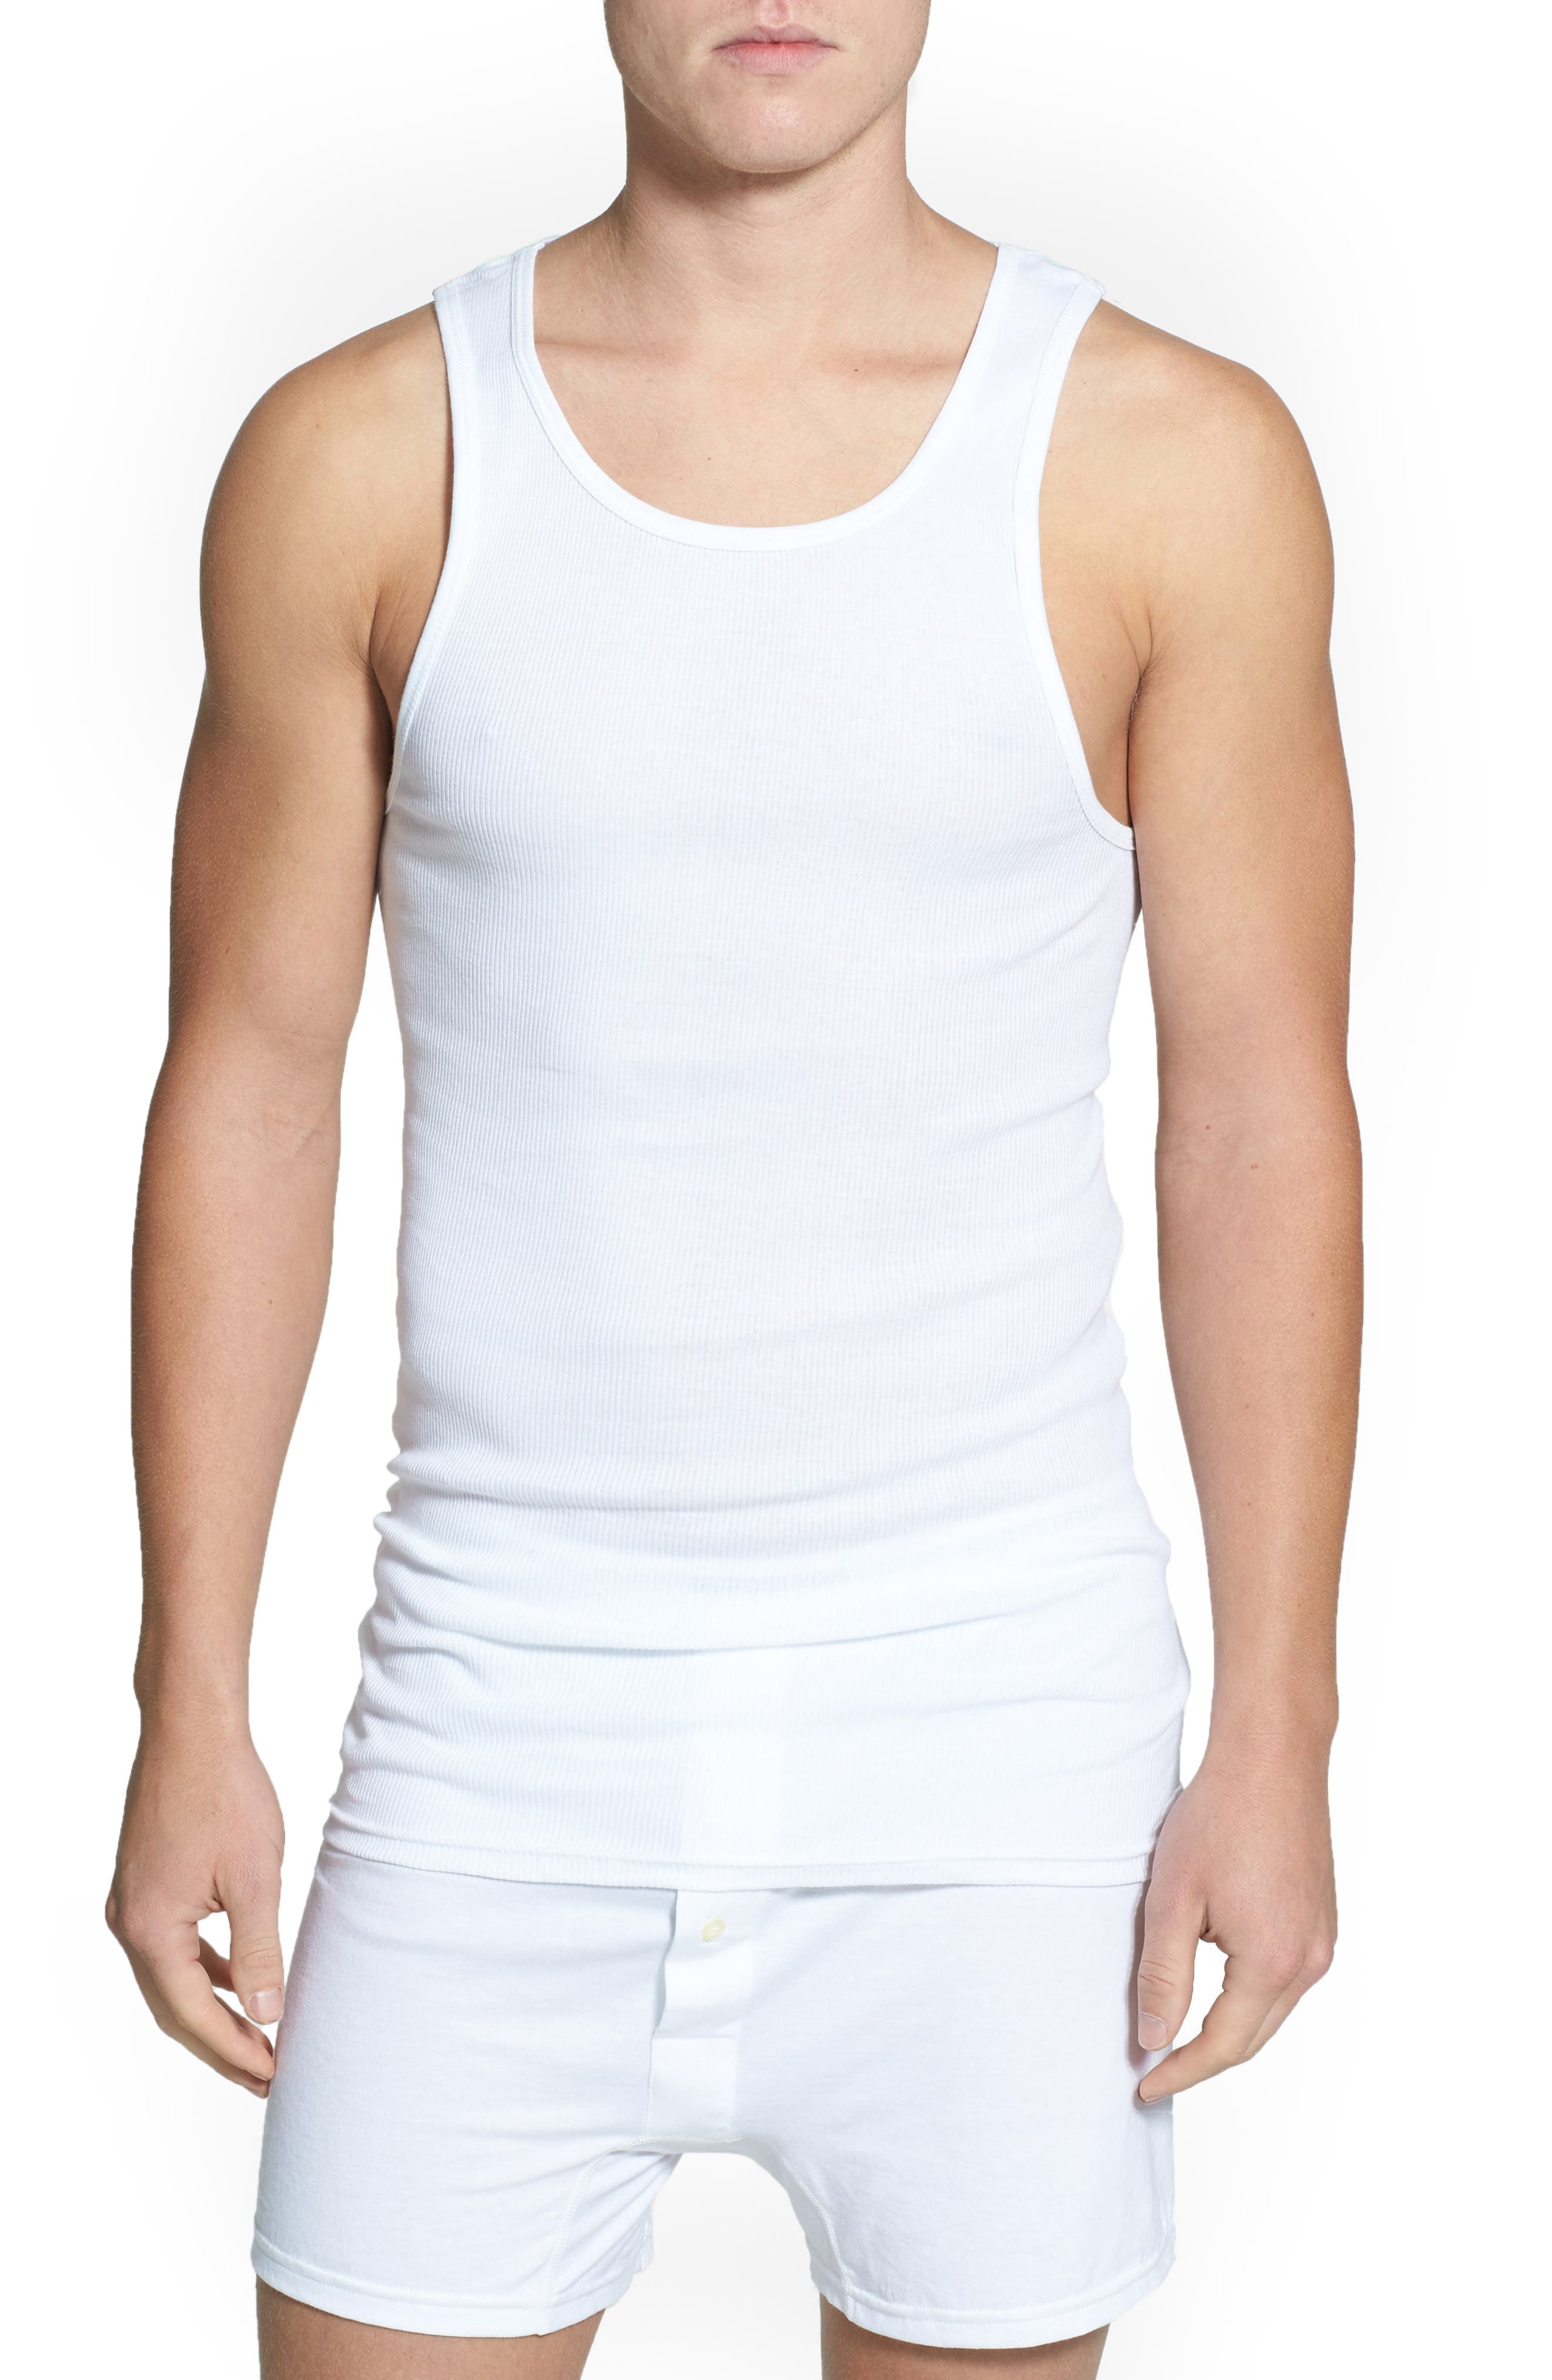 men's athletic sleeveless shirts